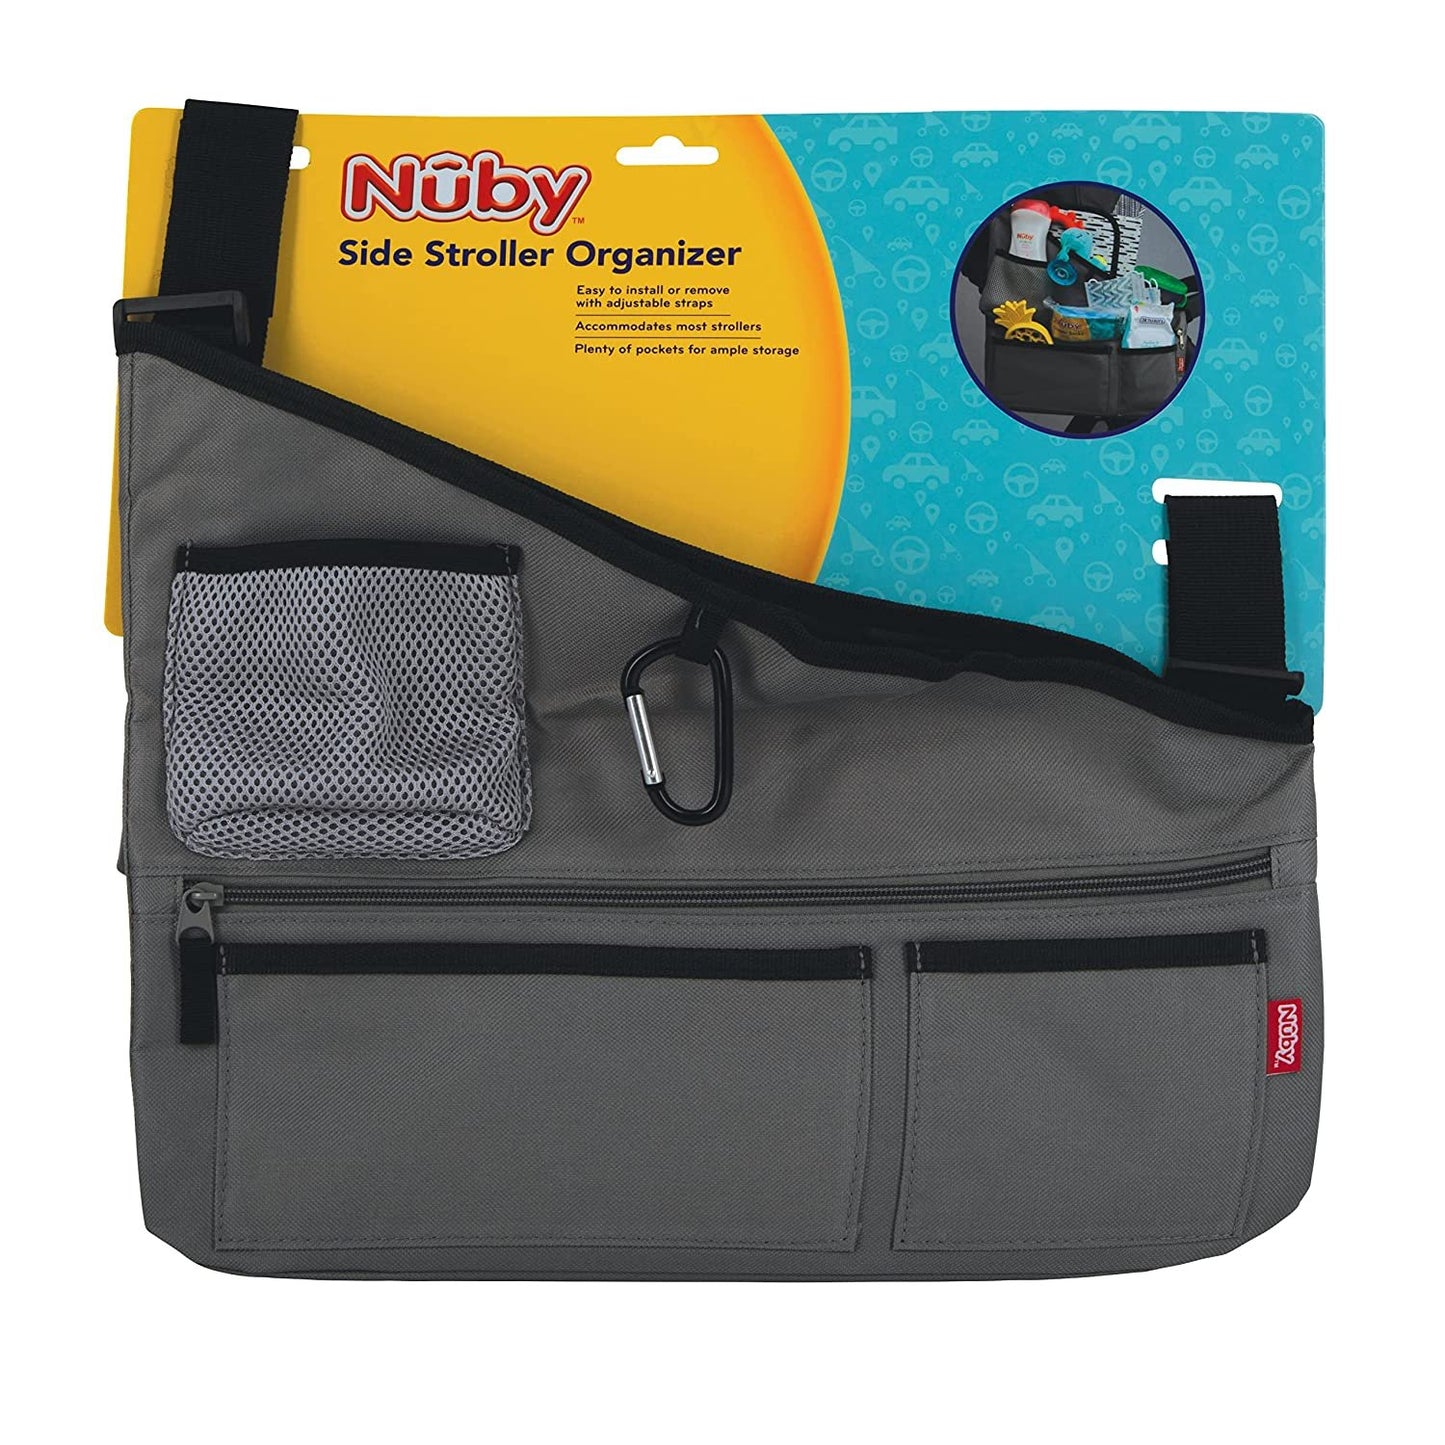 Nuby Fabric Side Stroller Organizer: Keeps Essentials Organized